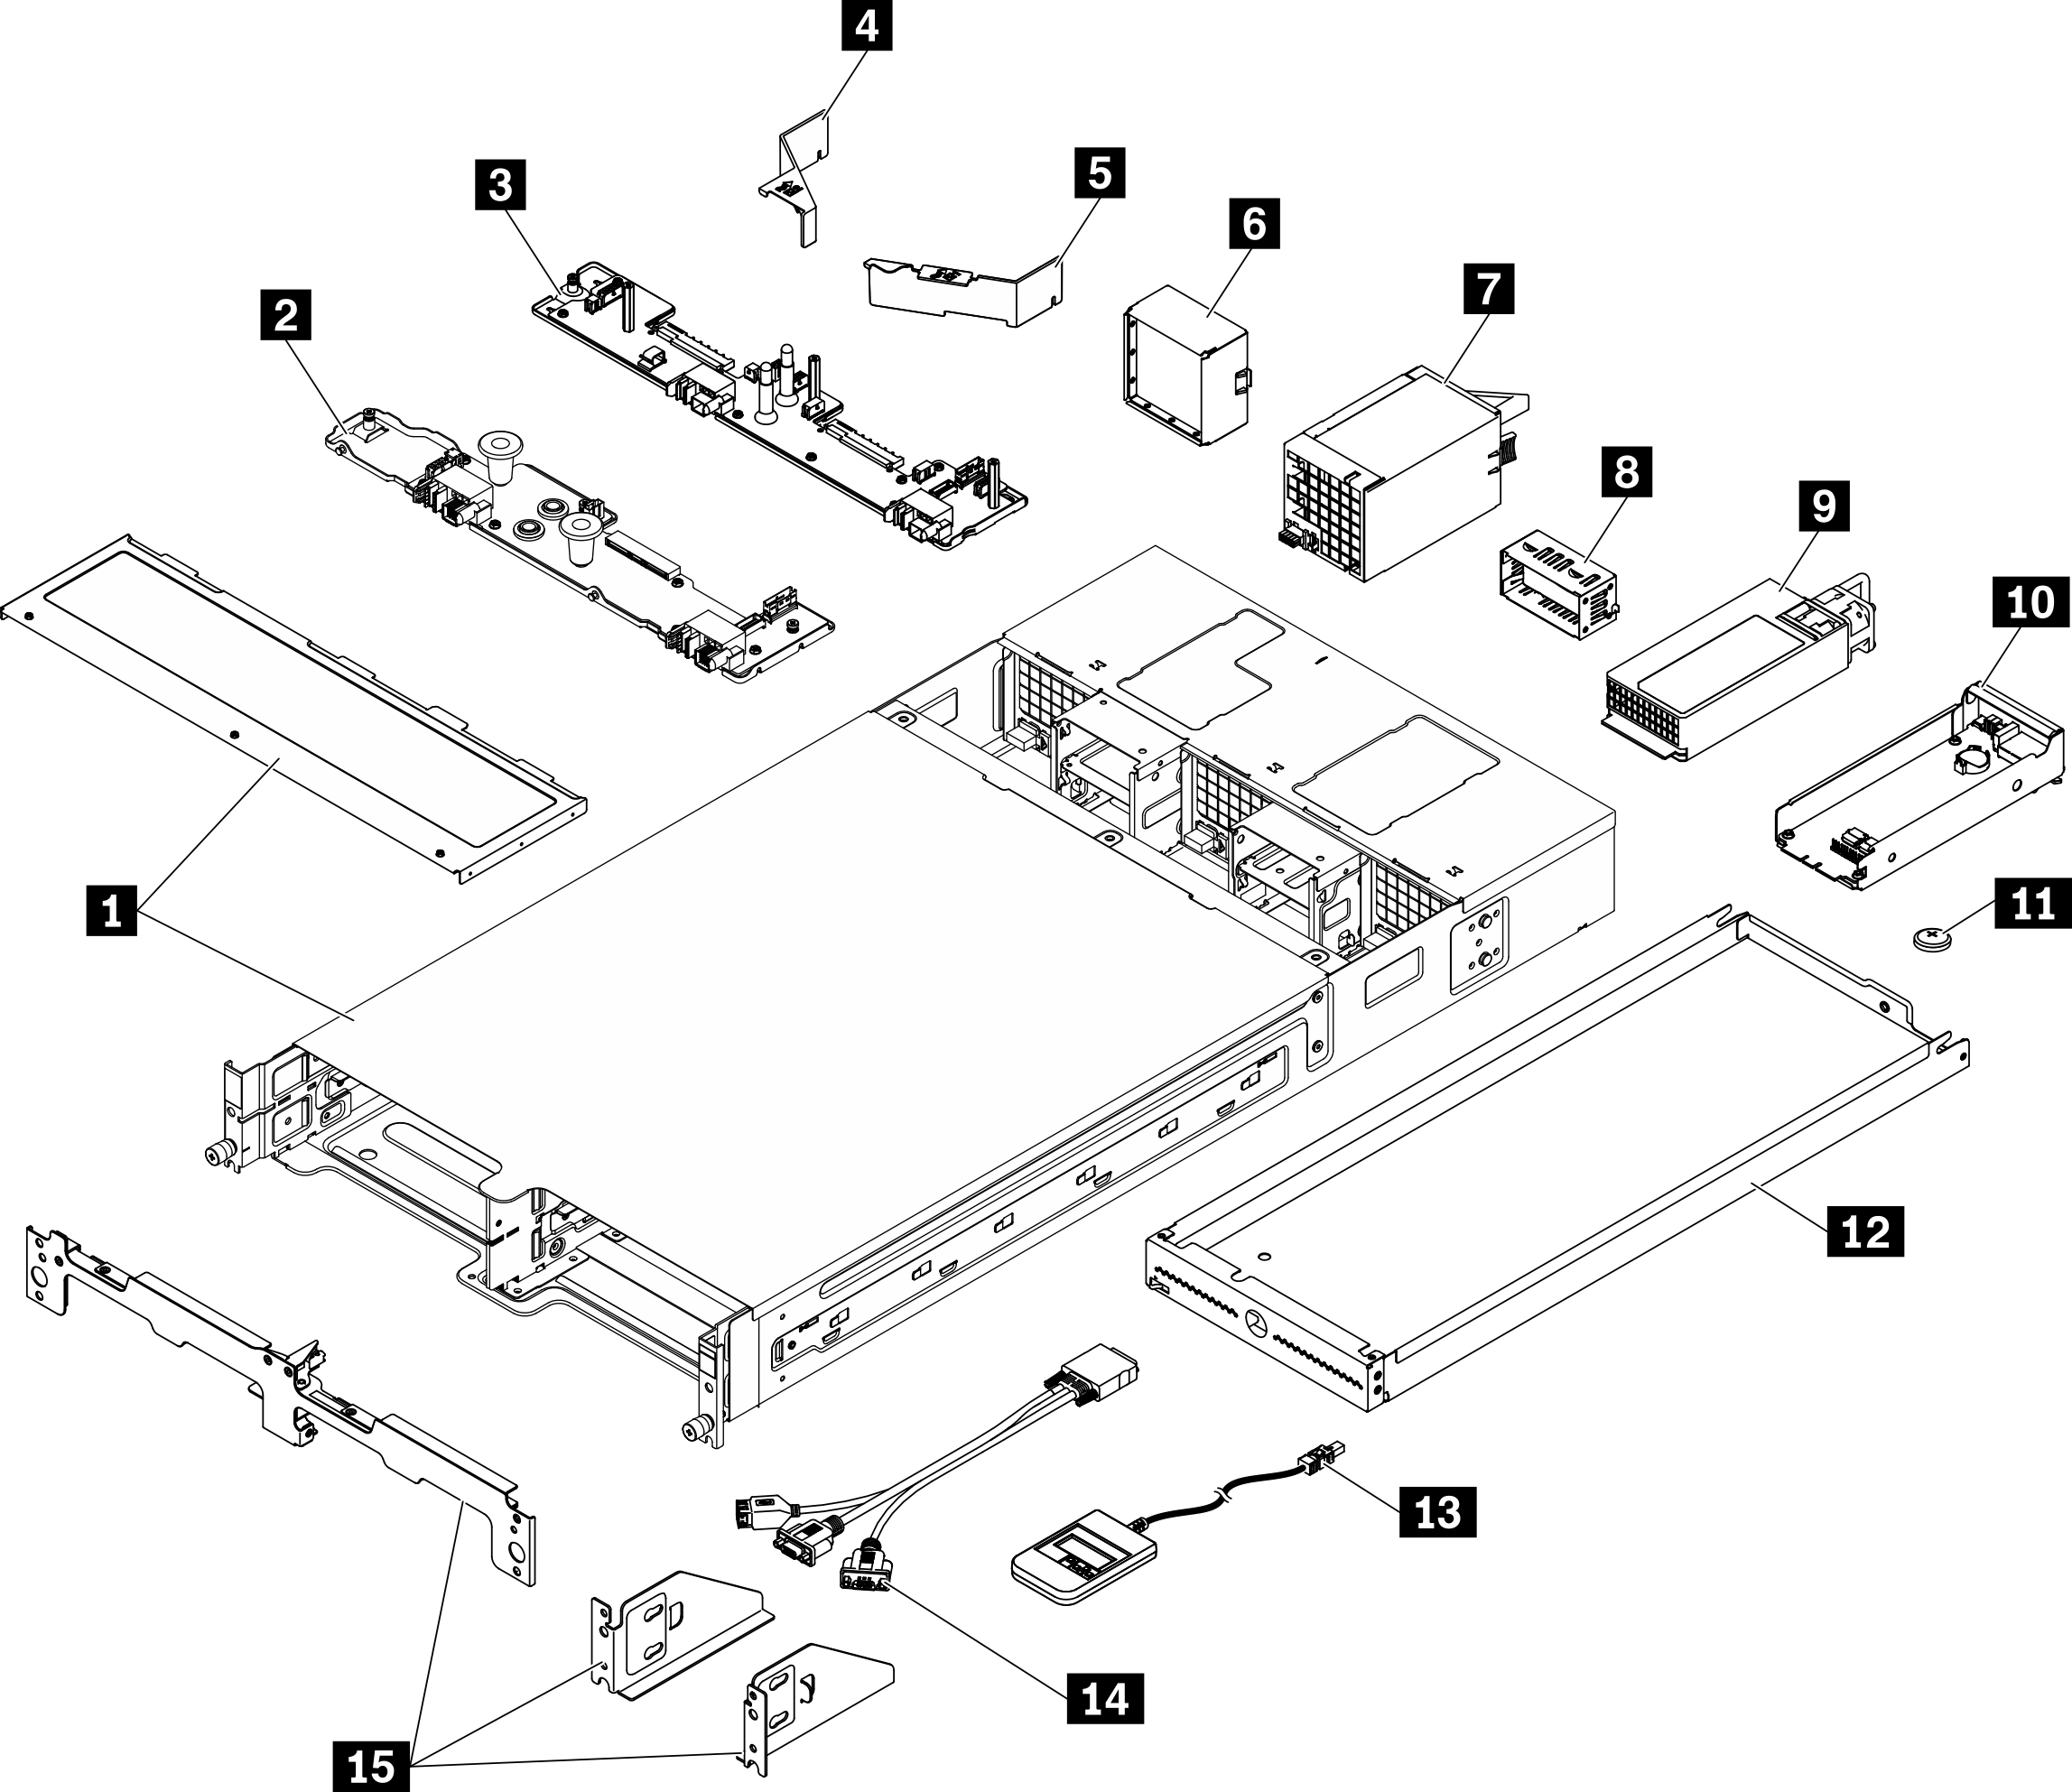 Enclosure components